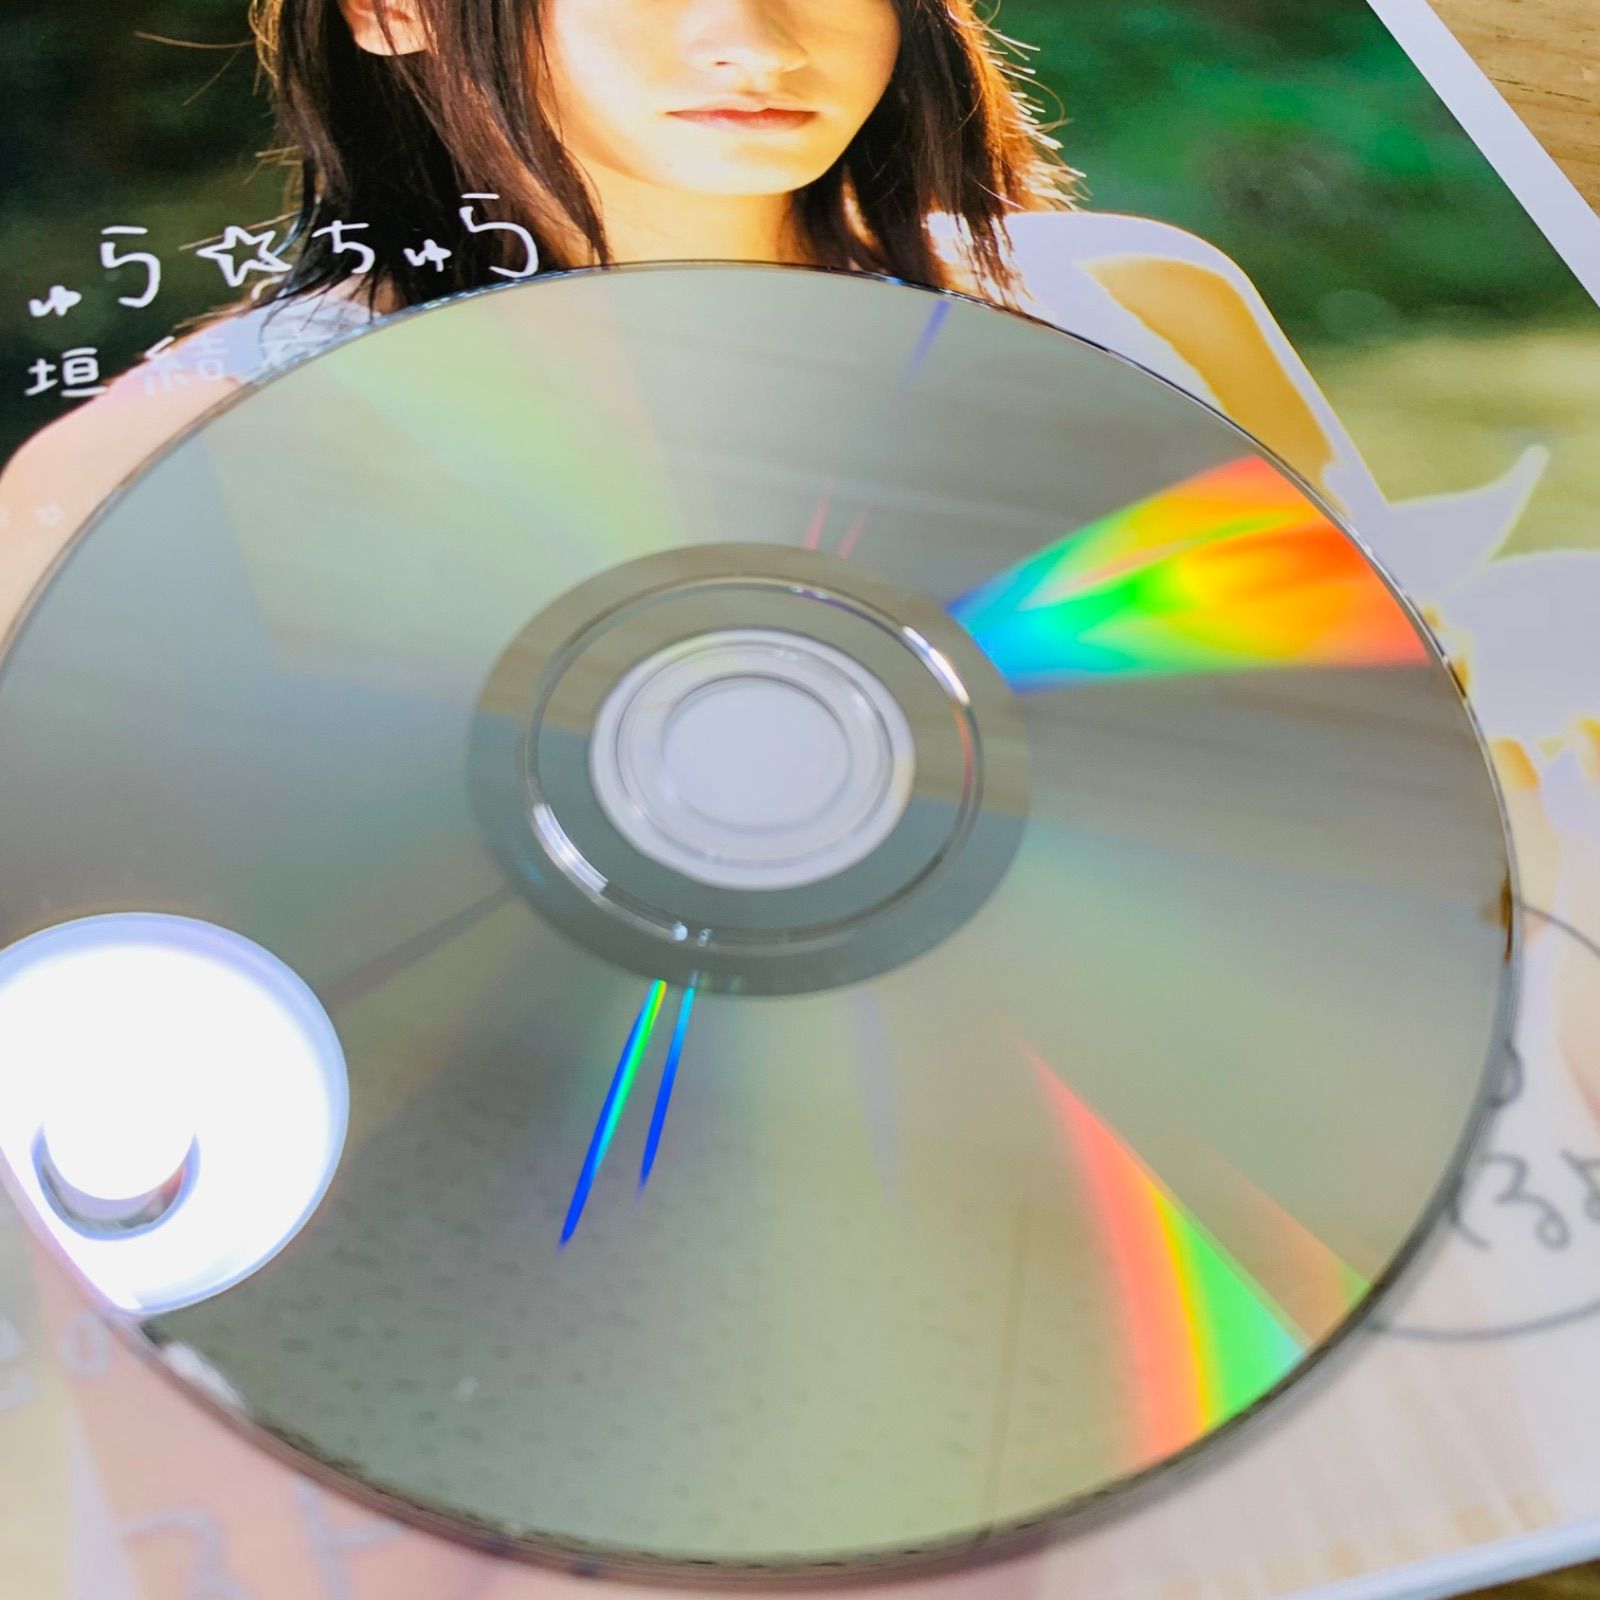 ☆V33269-10 DVD付)新垣結衣写真集 ちゅら・ちゅら - メルカリ